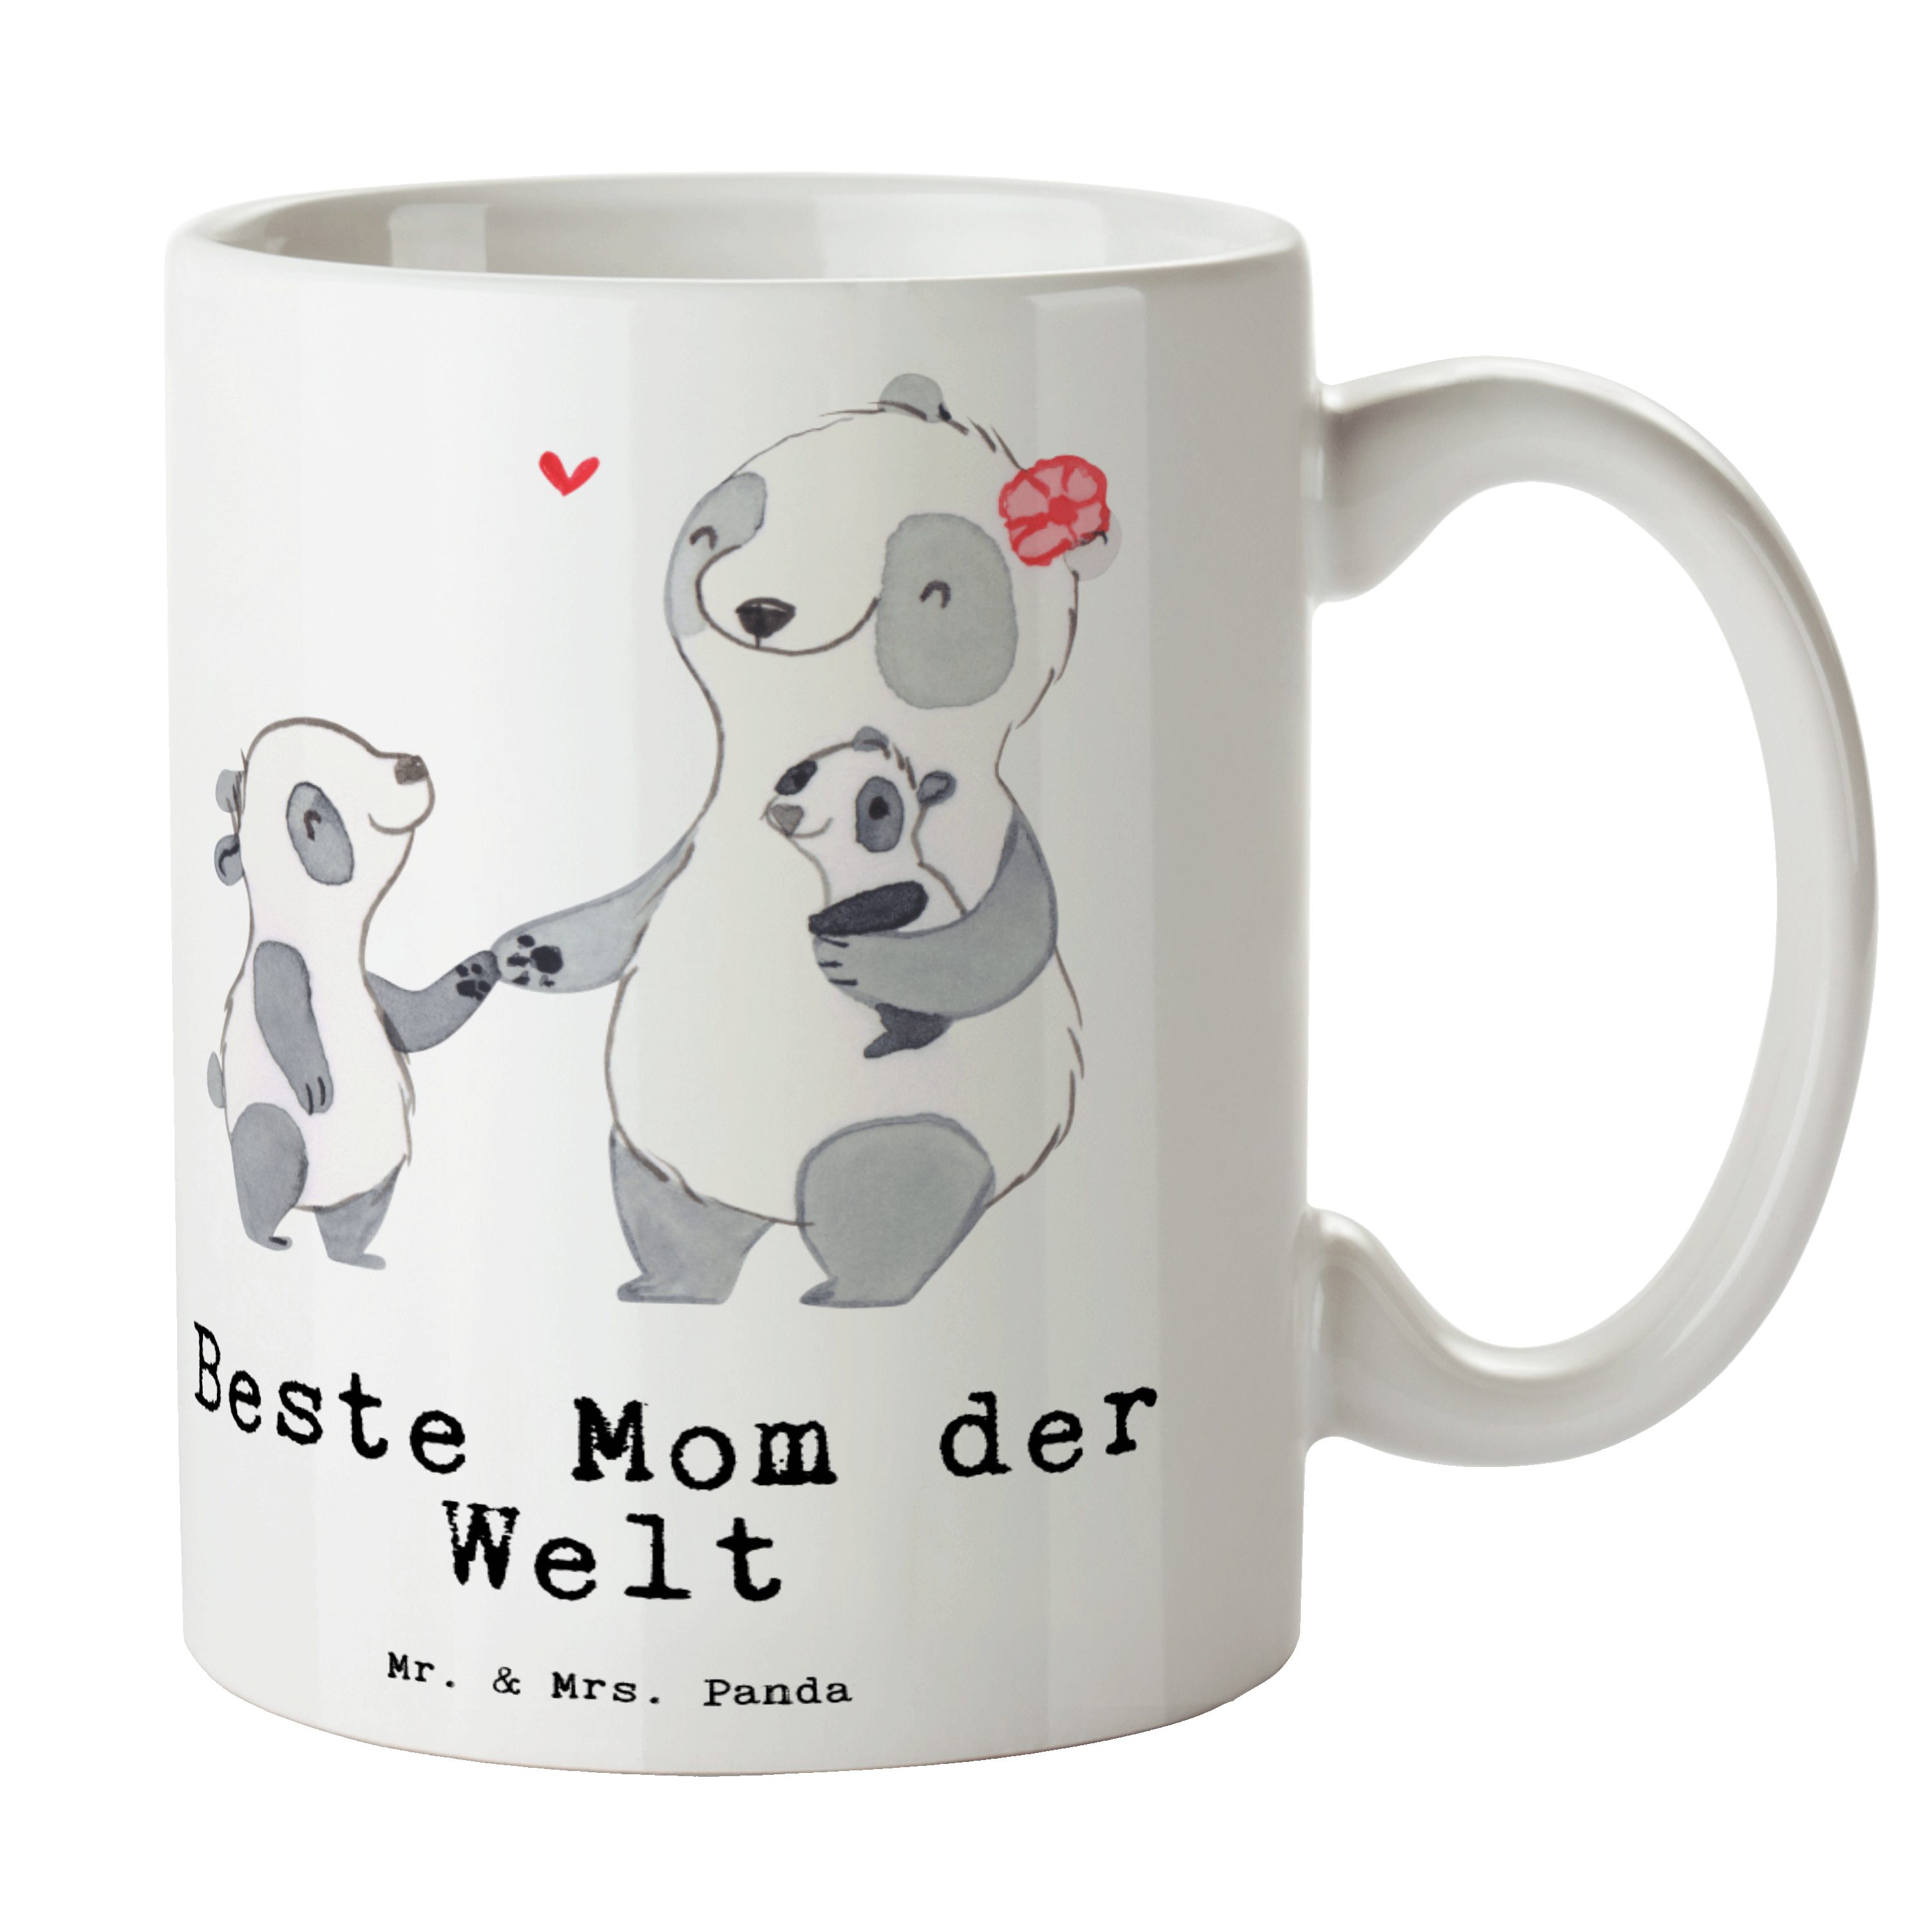 Mr. & Mrs. Panda Tasse Panda Beste Mom der Welt - Weiß - Geschenk, Freude machen, Becher, Tee, Schenken, Kaffeetasse, Mutter, Kaffeebecher, Supermama, Büro, Dankeschön, Ma, Keramik